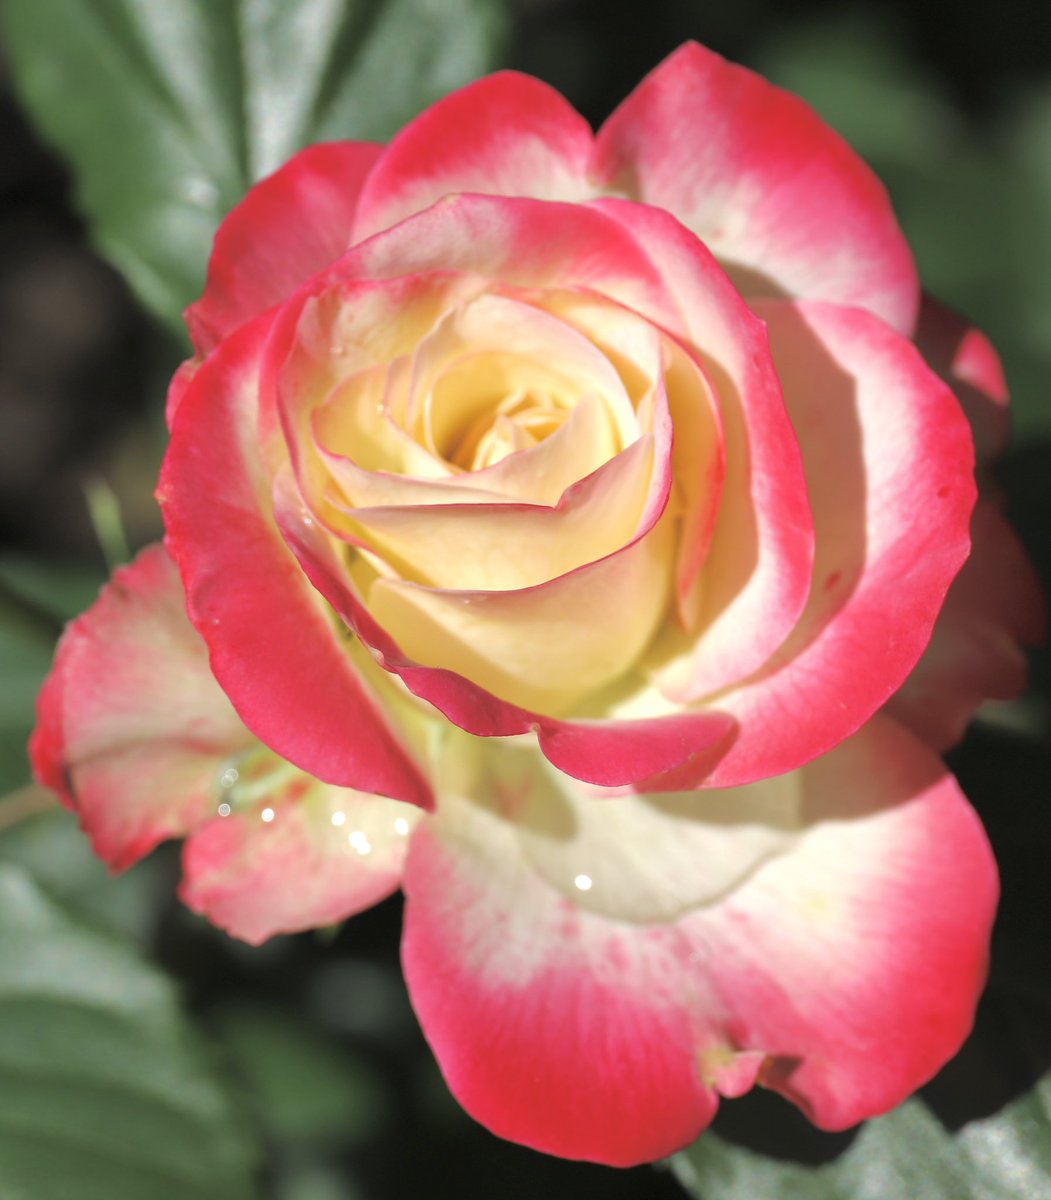 バラ🌹プリンセス ドゥ モナコ🌹仏
白地に鮮やかなピンクの覆輪を見せる巨大輪、美しい！女優グレース・ケリーがモナコ公妃として20数年過ごされた後、再び捧げられたバラ。丸弁高芯咲き、上品で華麗なバラ
 #バラ #島和太郎 #オフィスアーツ #花 #flowers #庭園 #スイーツ #朝 #空…